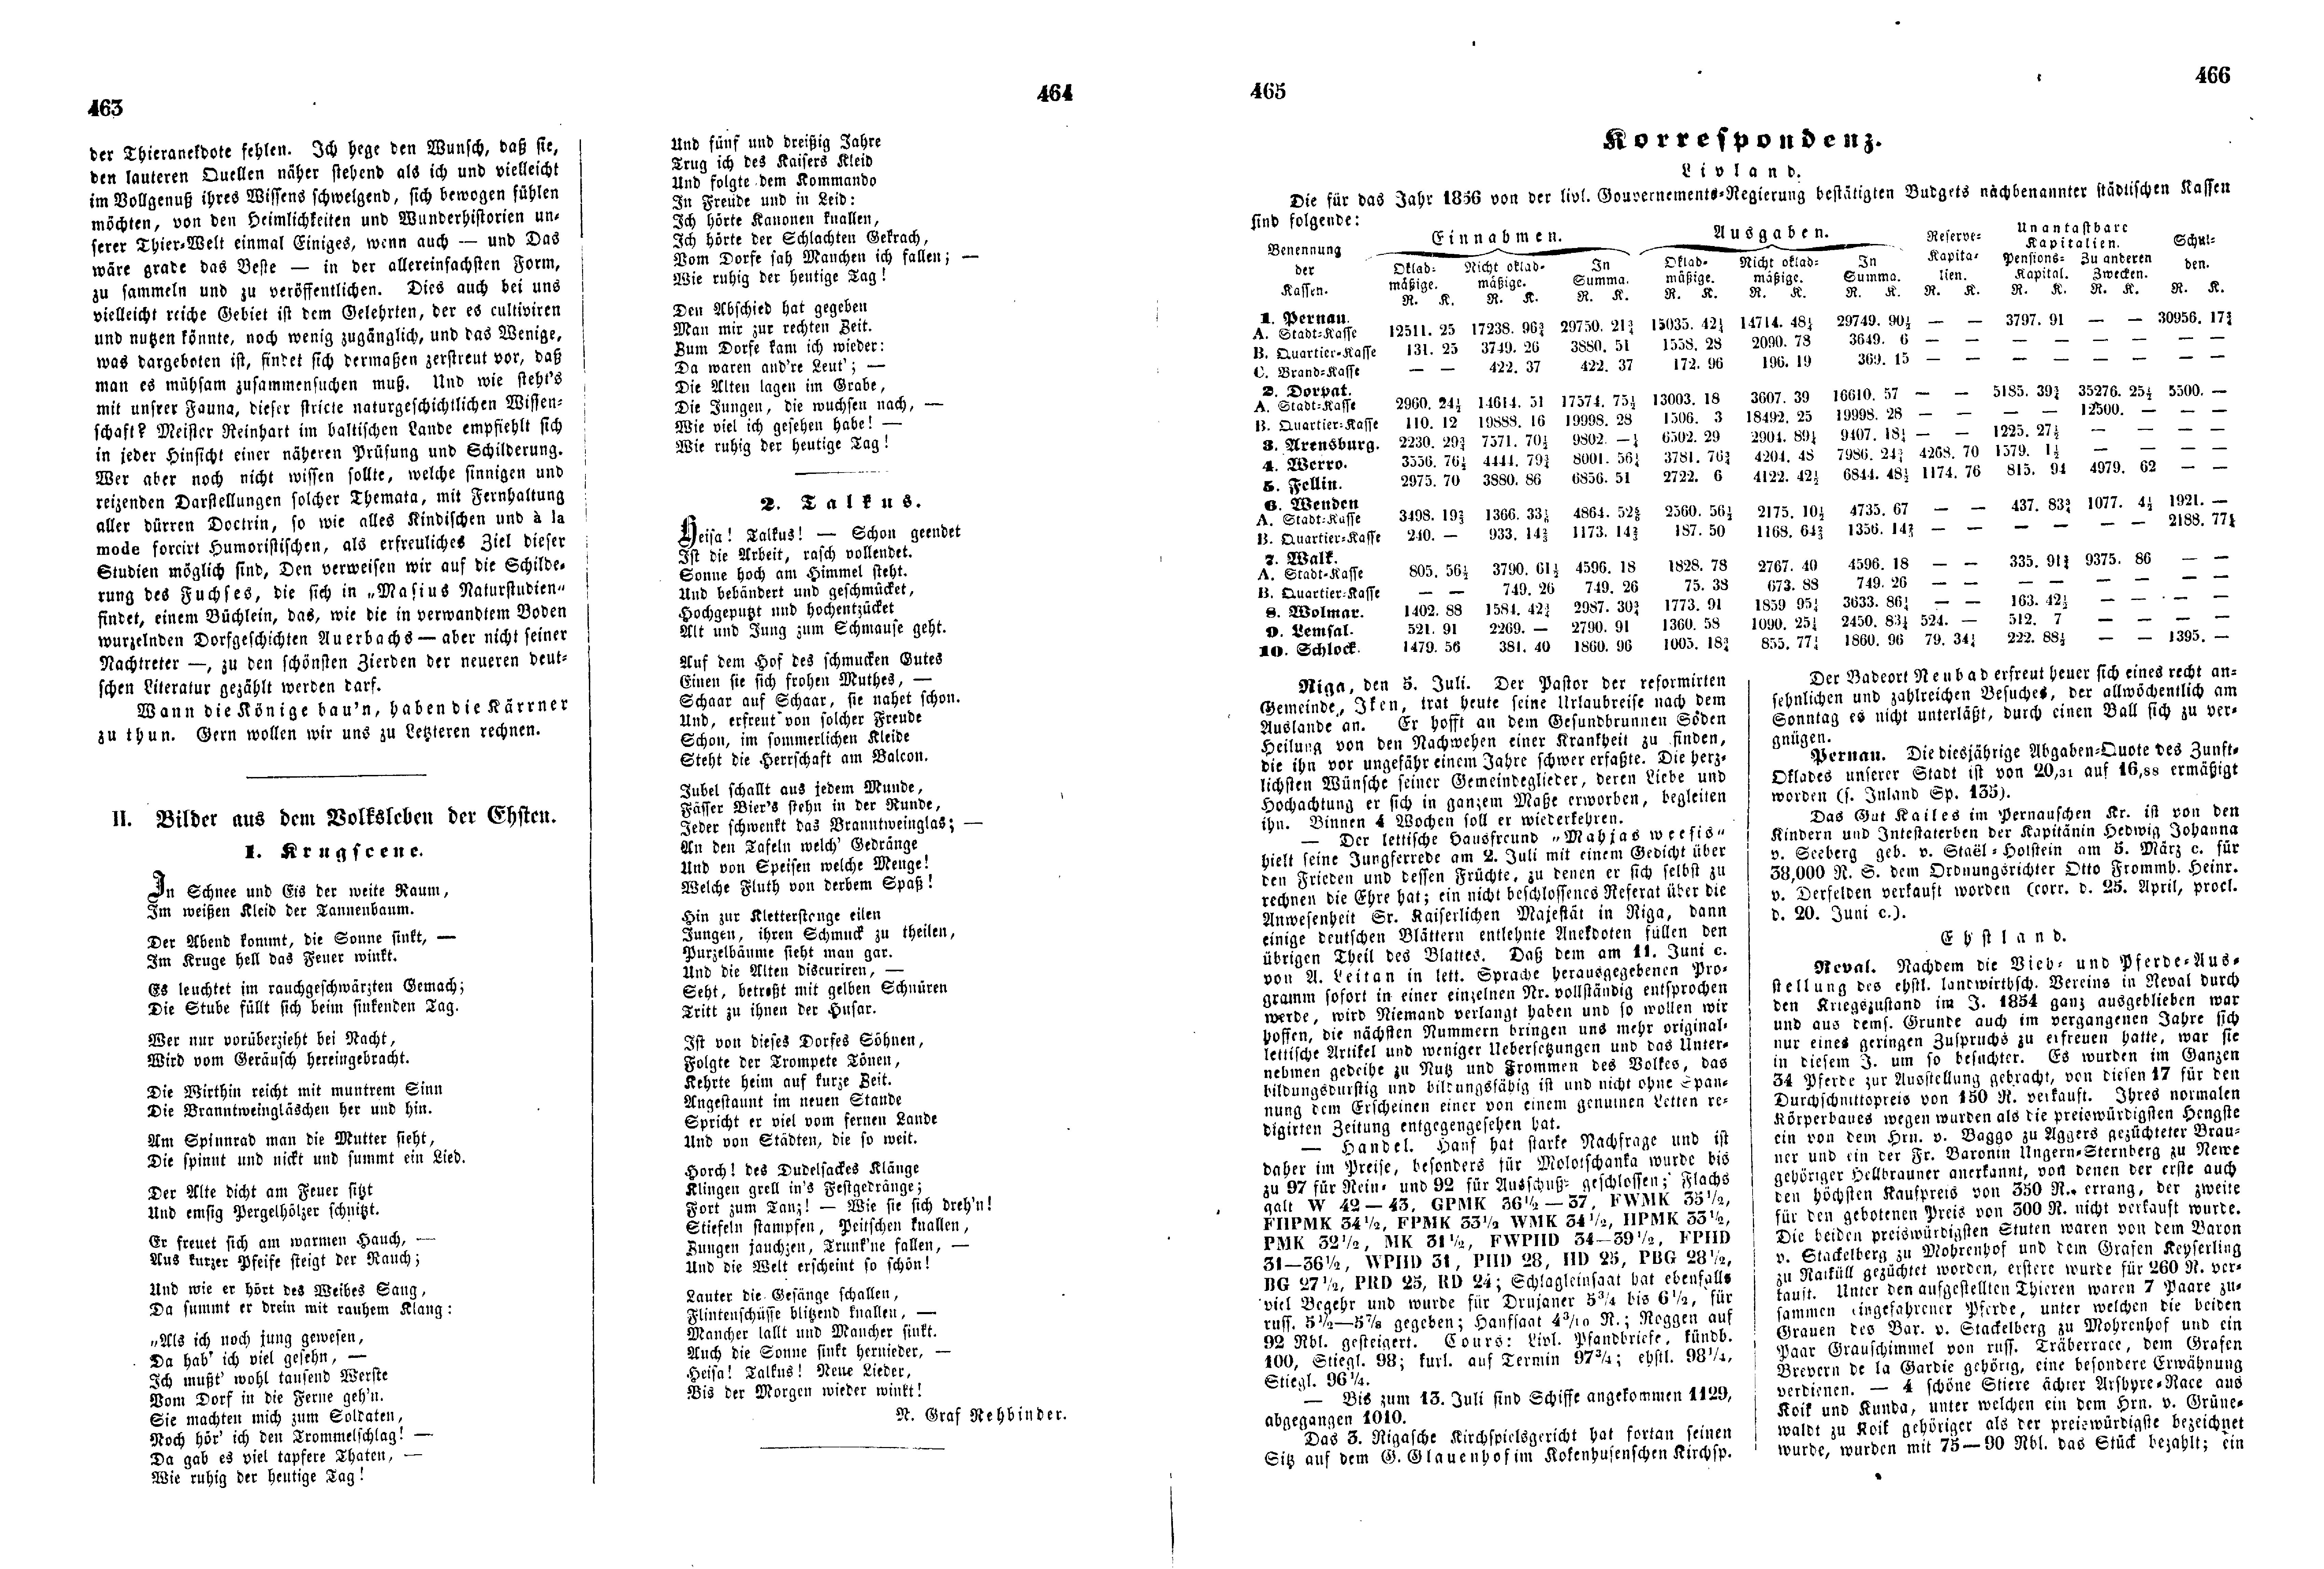 Das Inland [21] (1856) | 125. (463-466) Основной текст